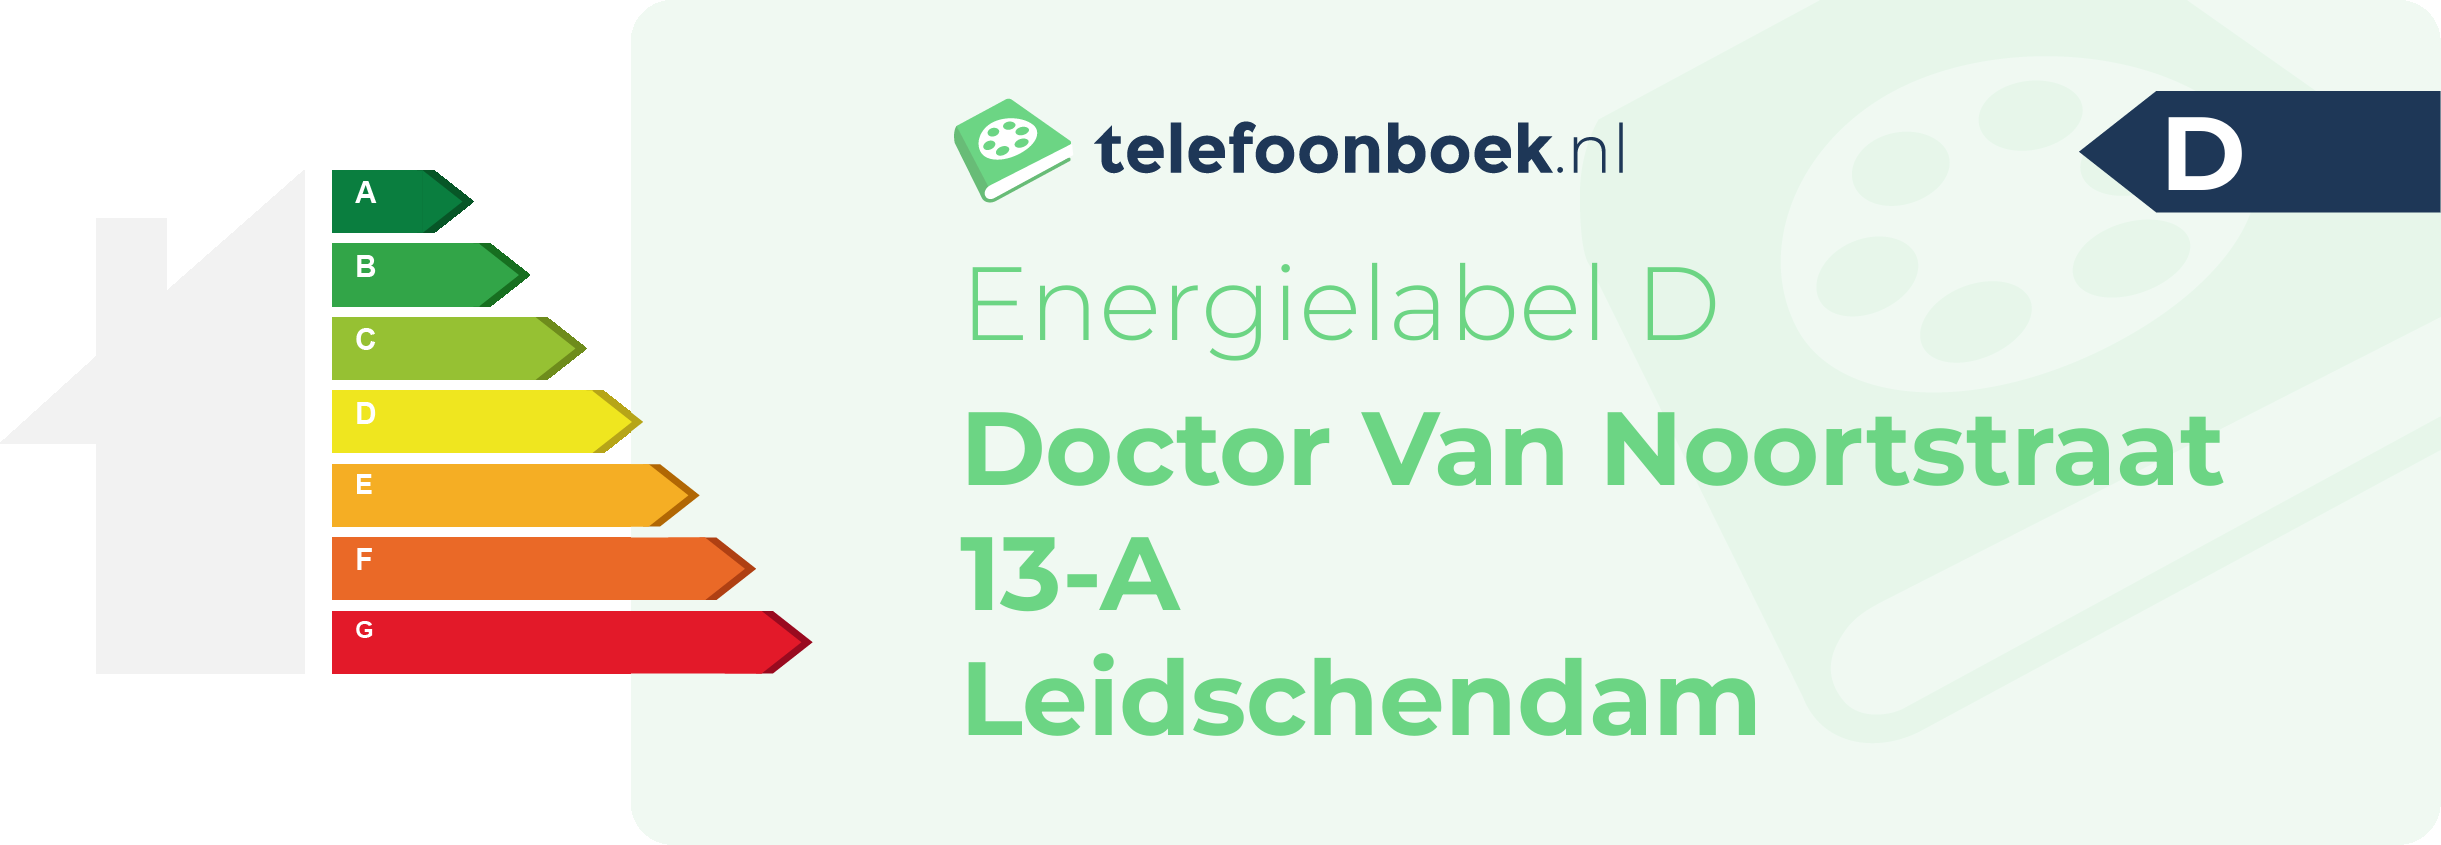 Energielabel Doctor Van Noortstraat 13-A Leidschendam